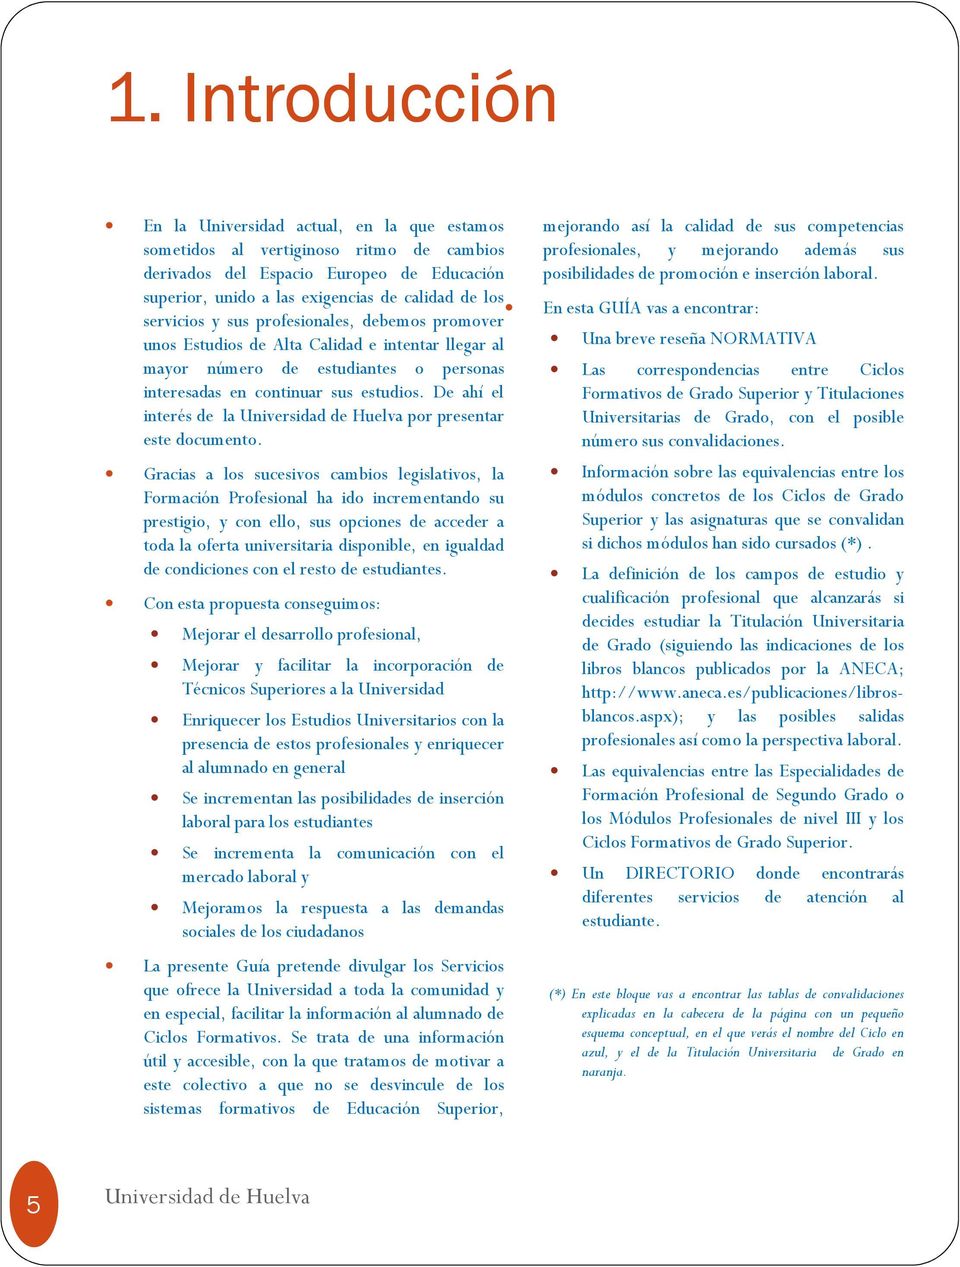 De ahí el interés de la Universidad de Huelva por presentar este documento.